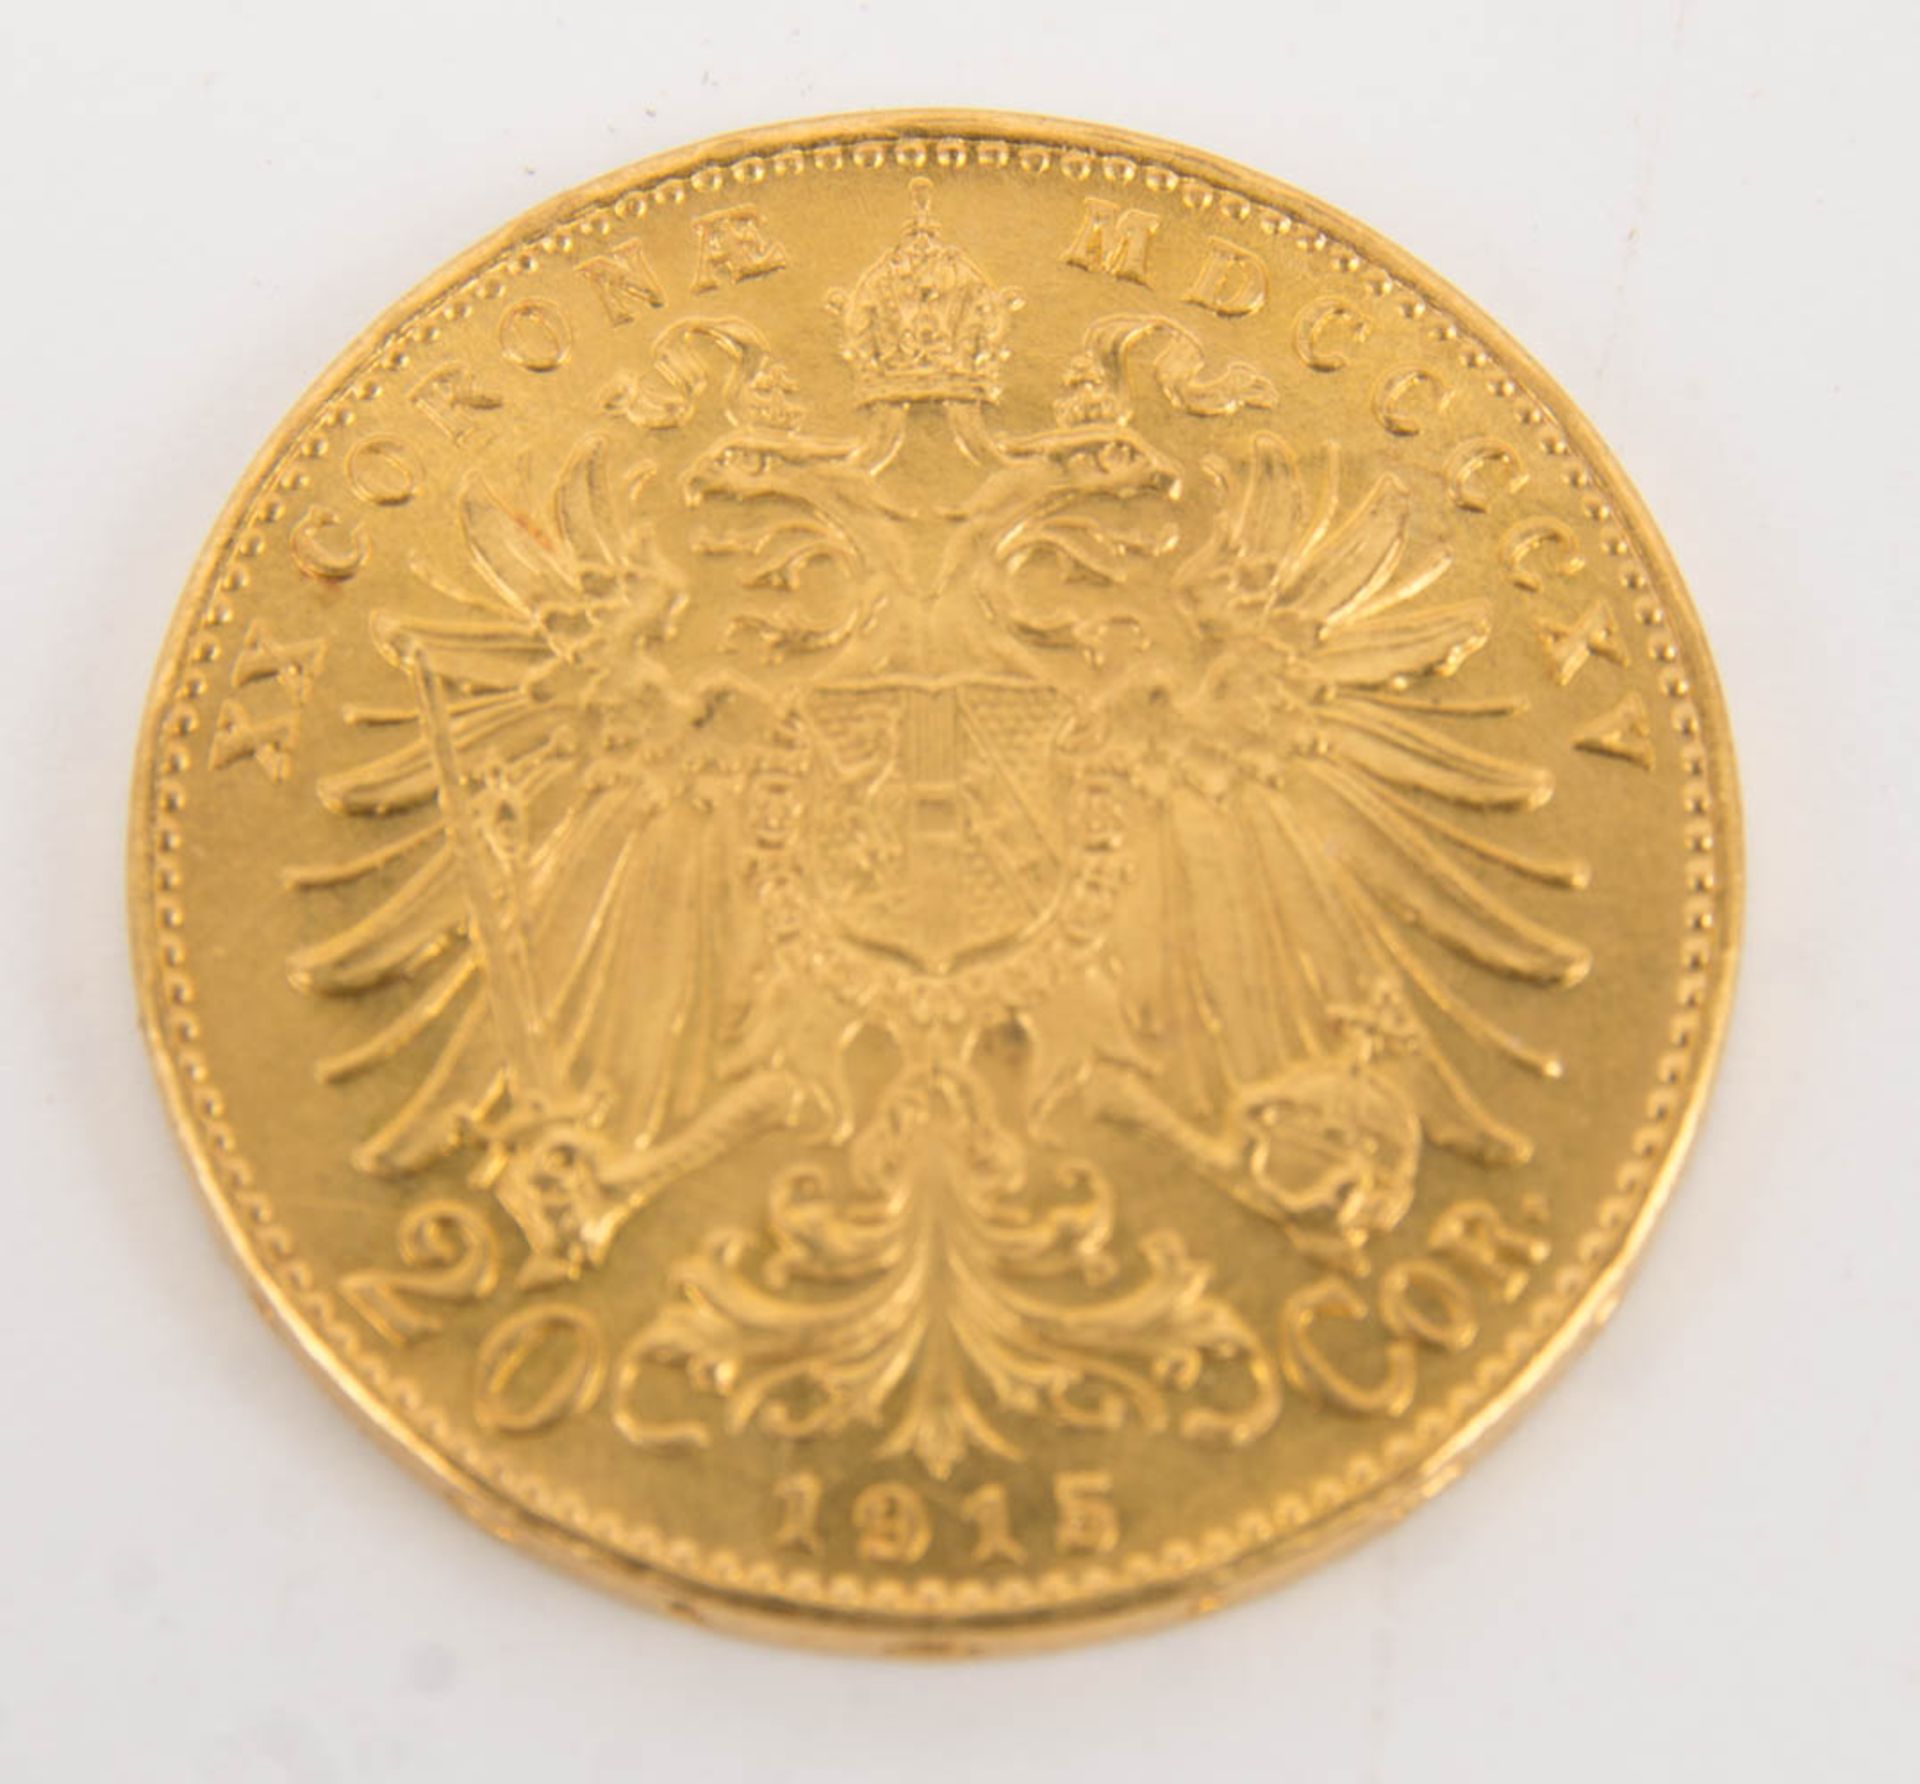 2 Goldmünzen 20 Kronen, Nachprägung 1915. - Bild 2 aus 7